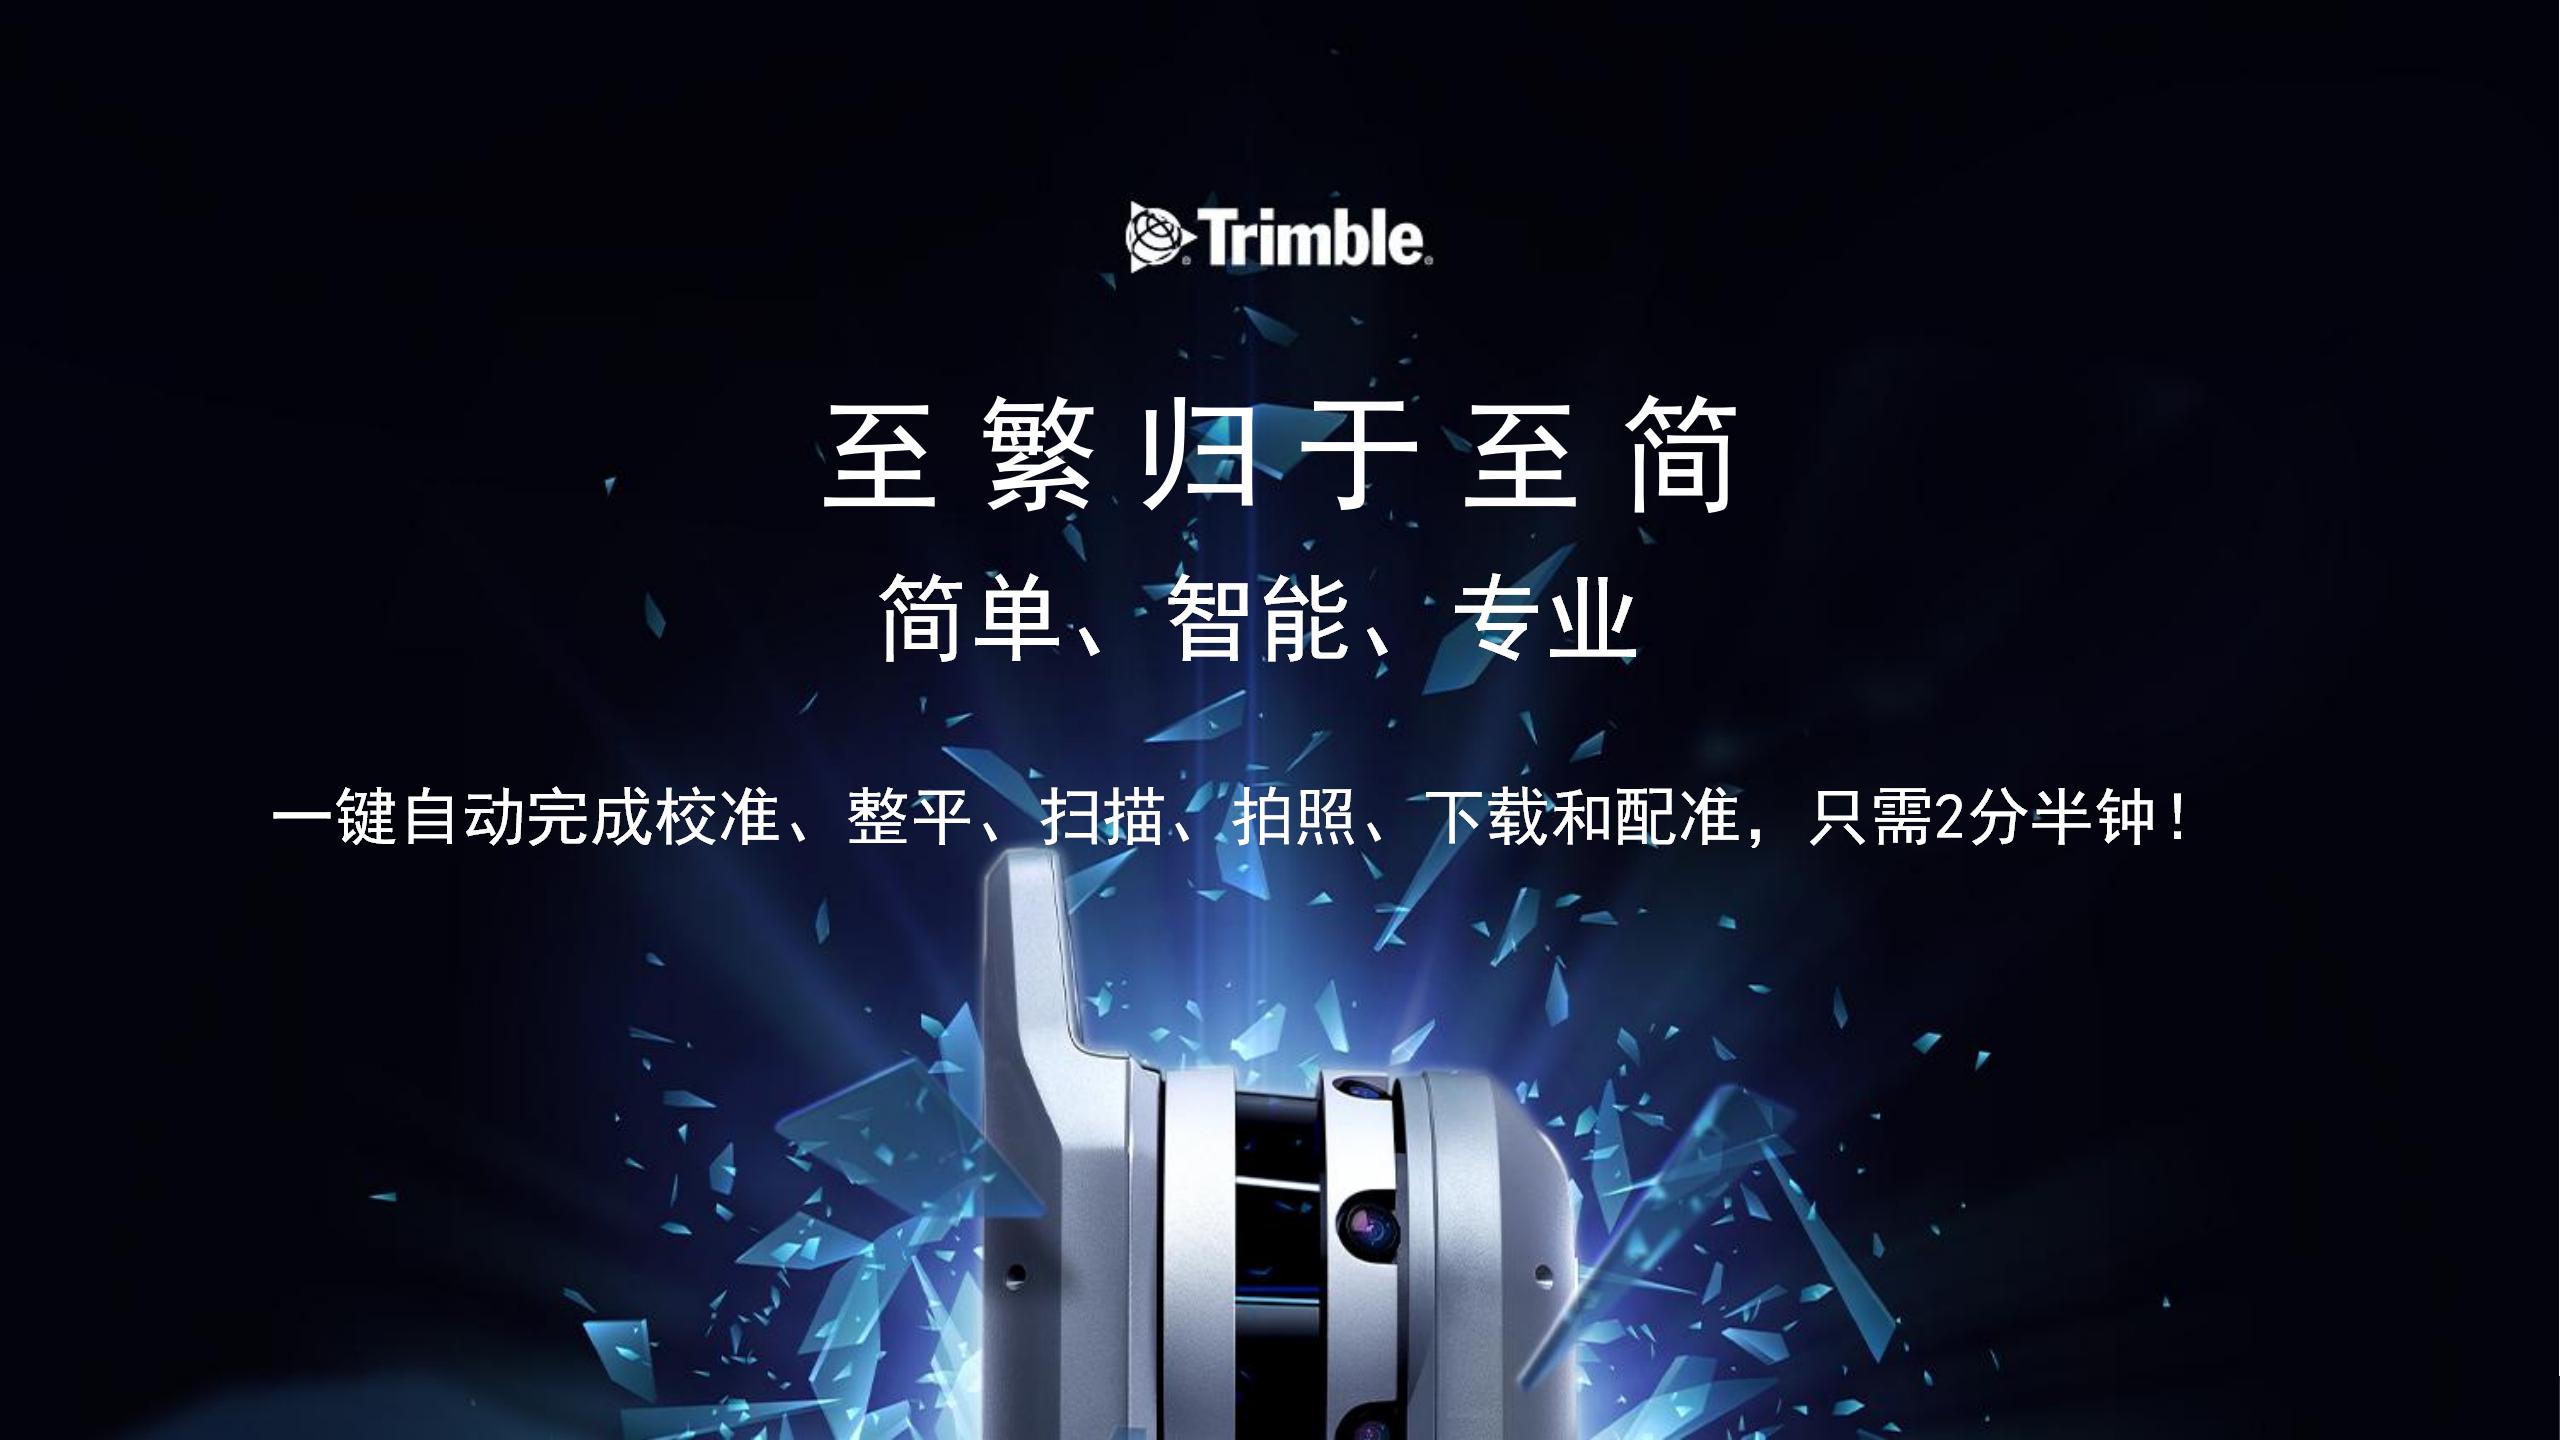 沪敖飞机行业PPT 2021版-Trimble.jpg